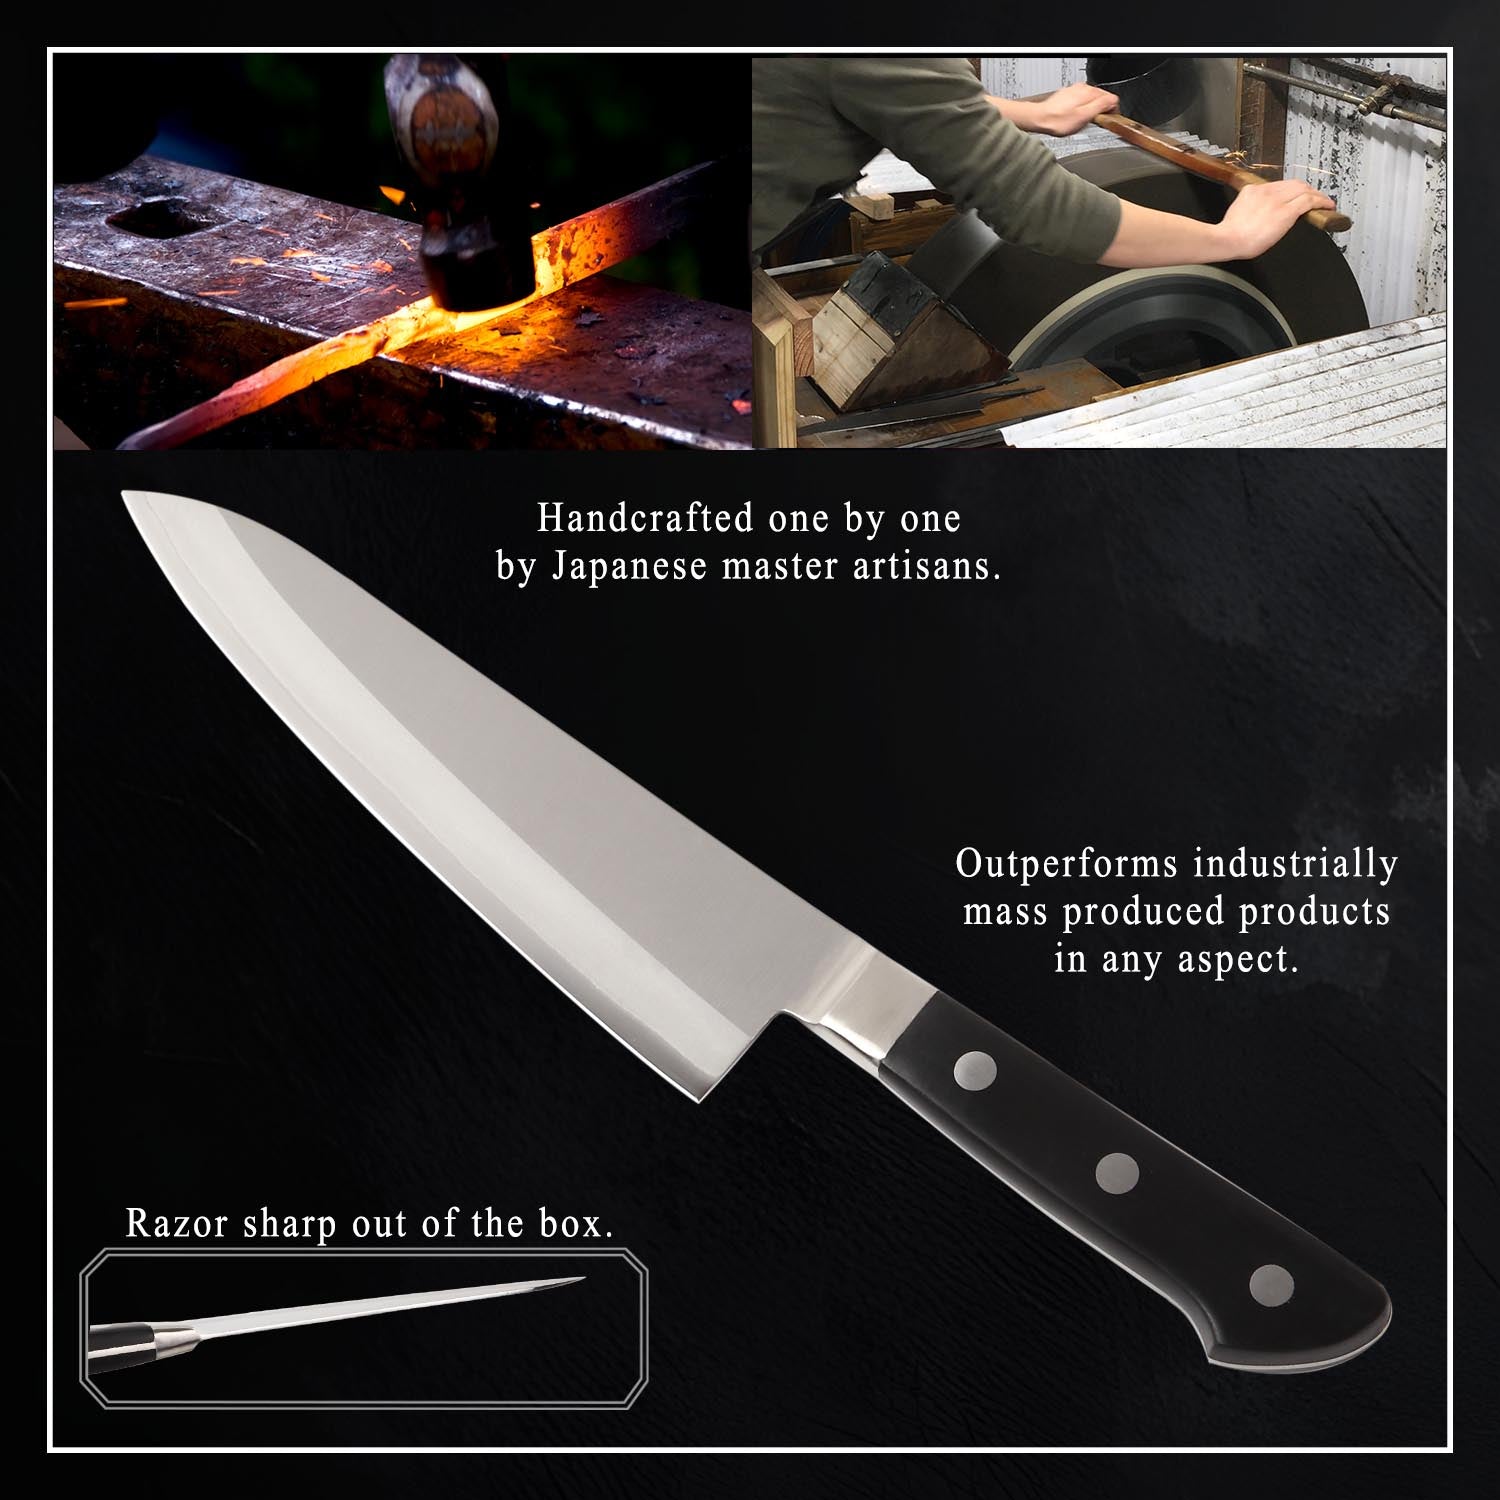 Is a sharp knife safer?